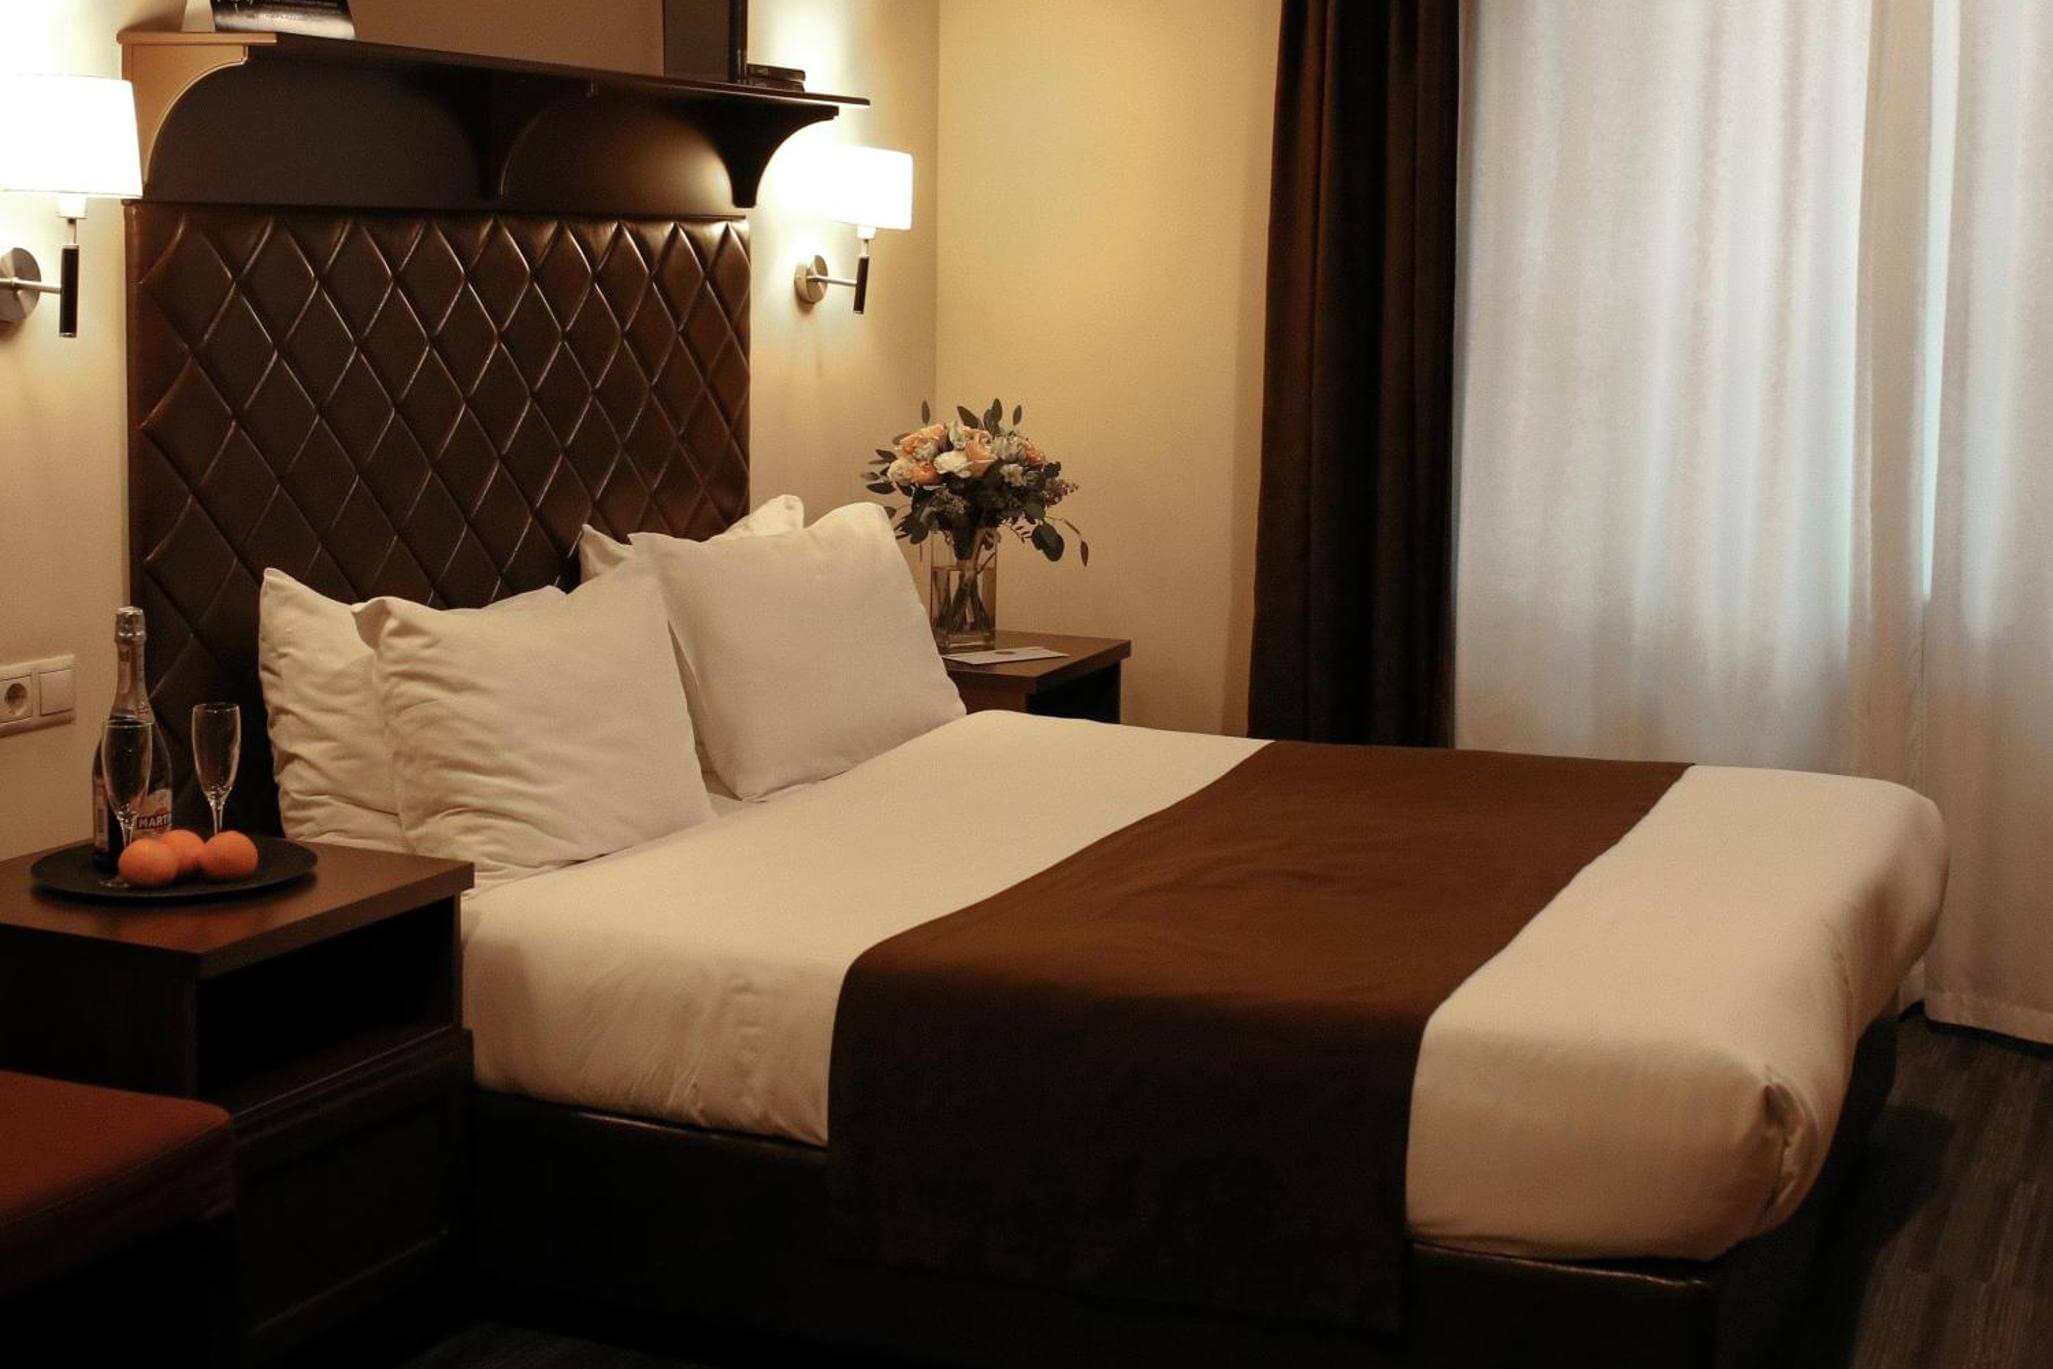 Спальня: коричневое саше на кровати, шампанское и фрукты на тумбочке.